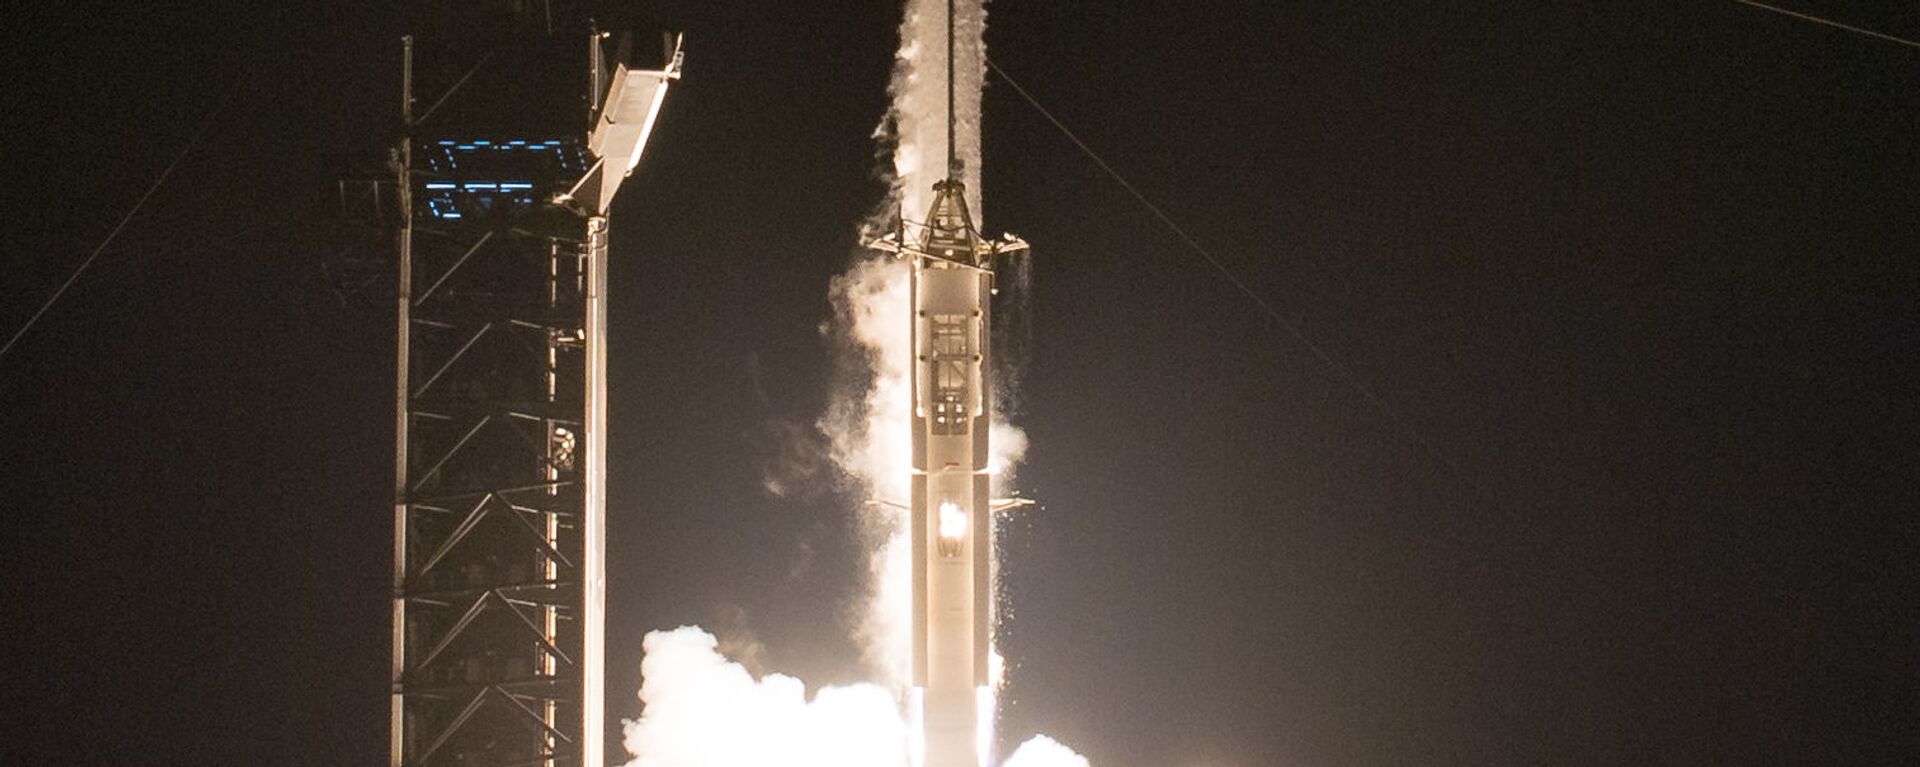 إطلاق مركبة سبيس إكس والتي تحمل اسم كرو دراغون عن طريق صاروخ فالكون 9، من مركز كينيدي للفضاء التابع لناسا في كيب كانافيرال بولاية فلوريدا، الولايات المتحدة 16 نوفمبر 2020 - سبوتنيك عربي, 1920, 07.11.2021